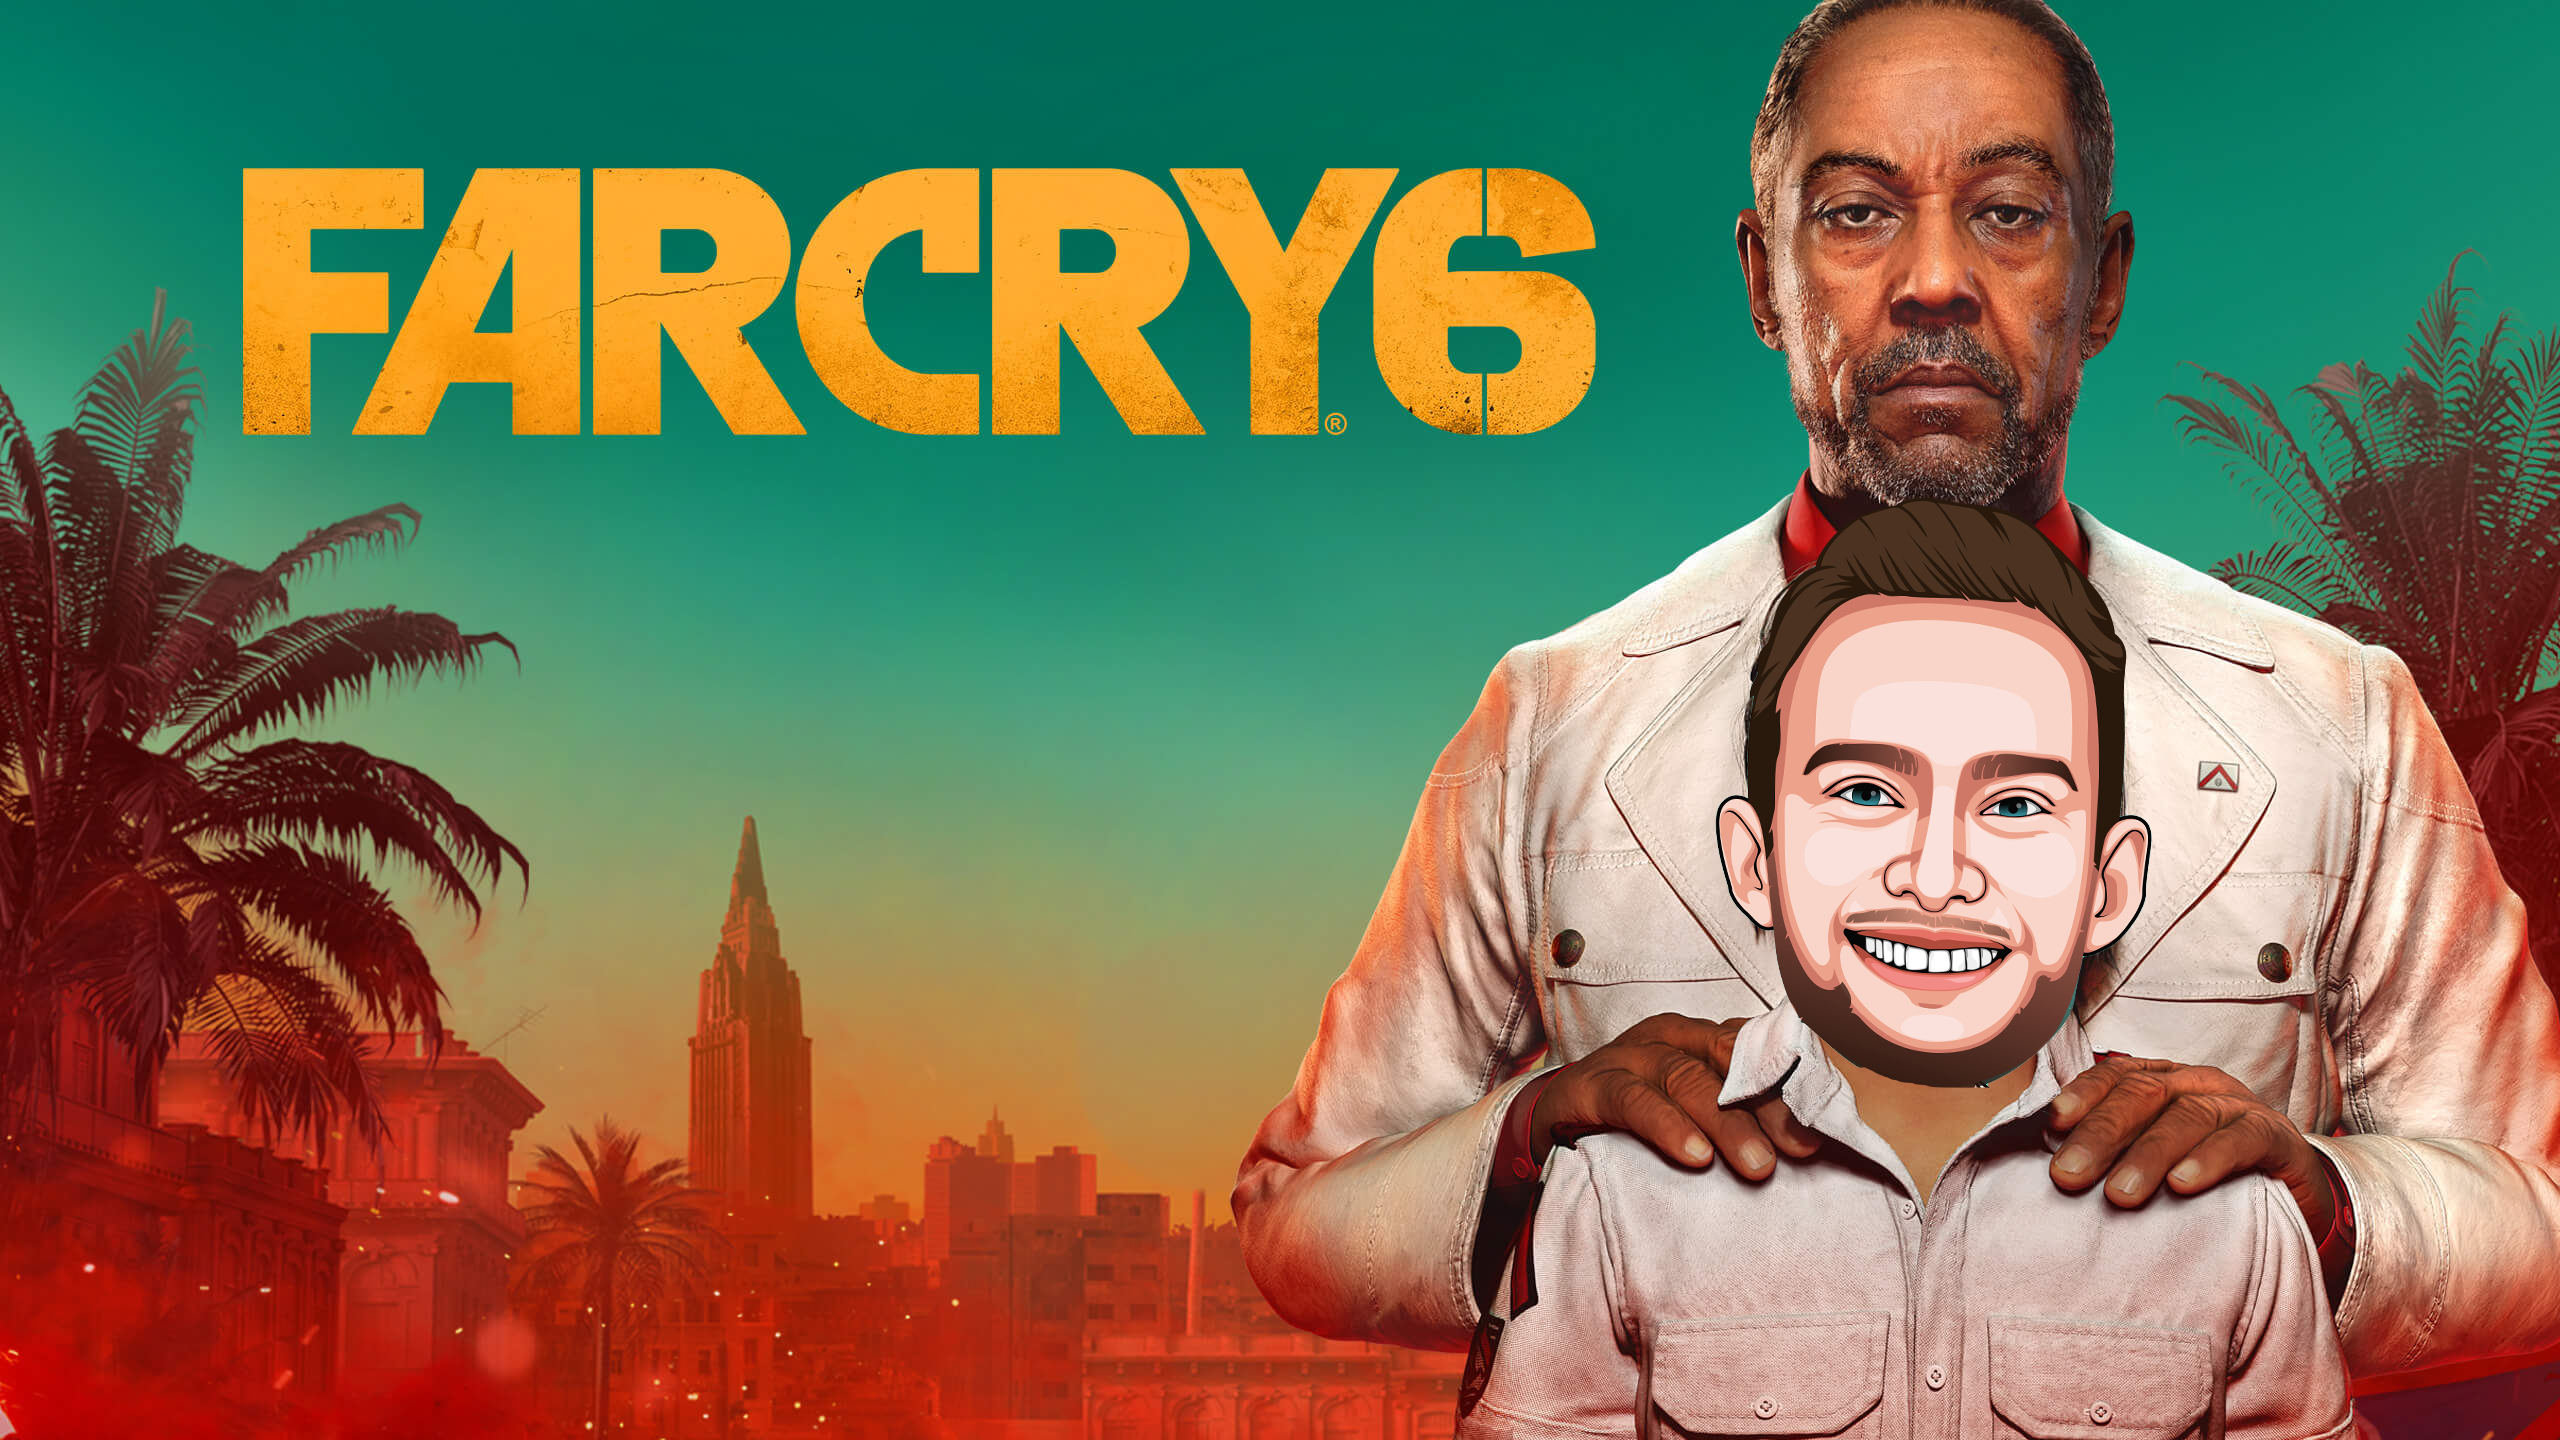 Far Cry 6 : le jeu avec le méchant de Breaking Bad dont t’as oublié le nom mais que t’aimes bien alors peut-être que tu vas essayer le jeu pour voir